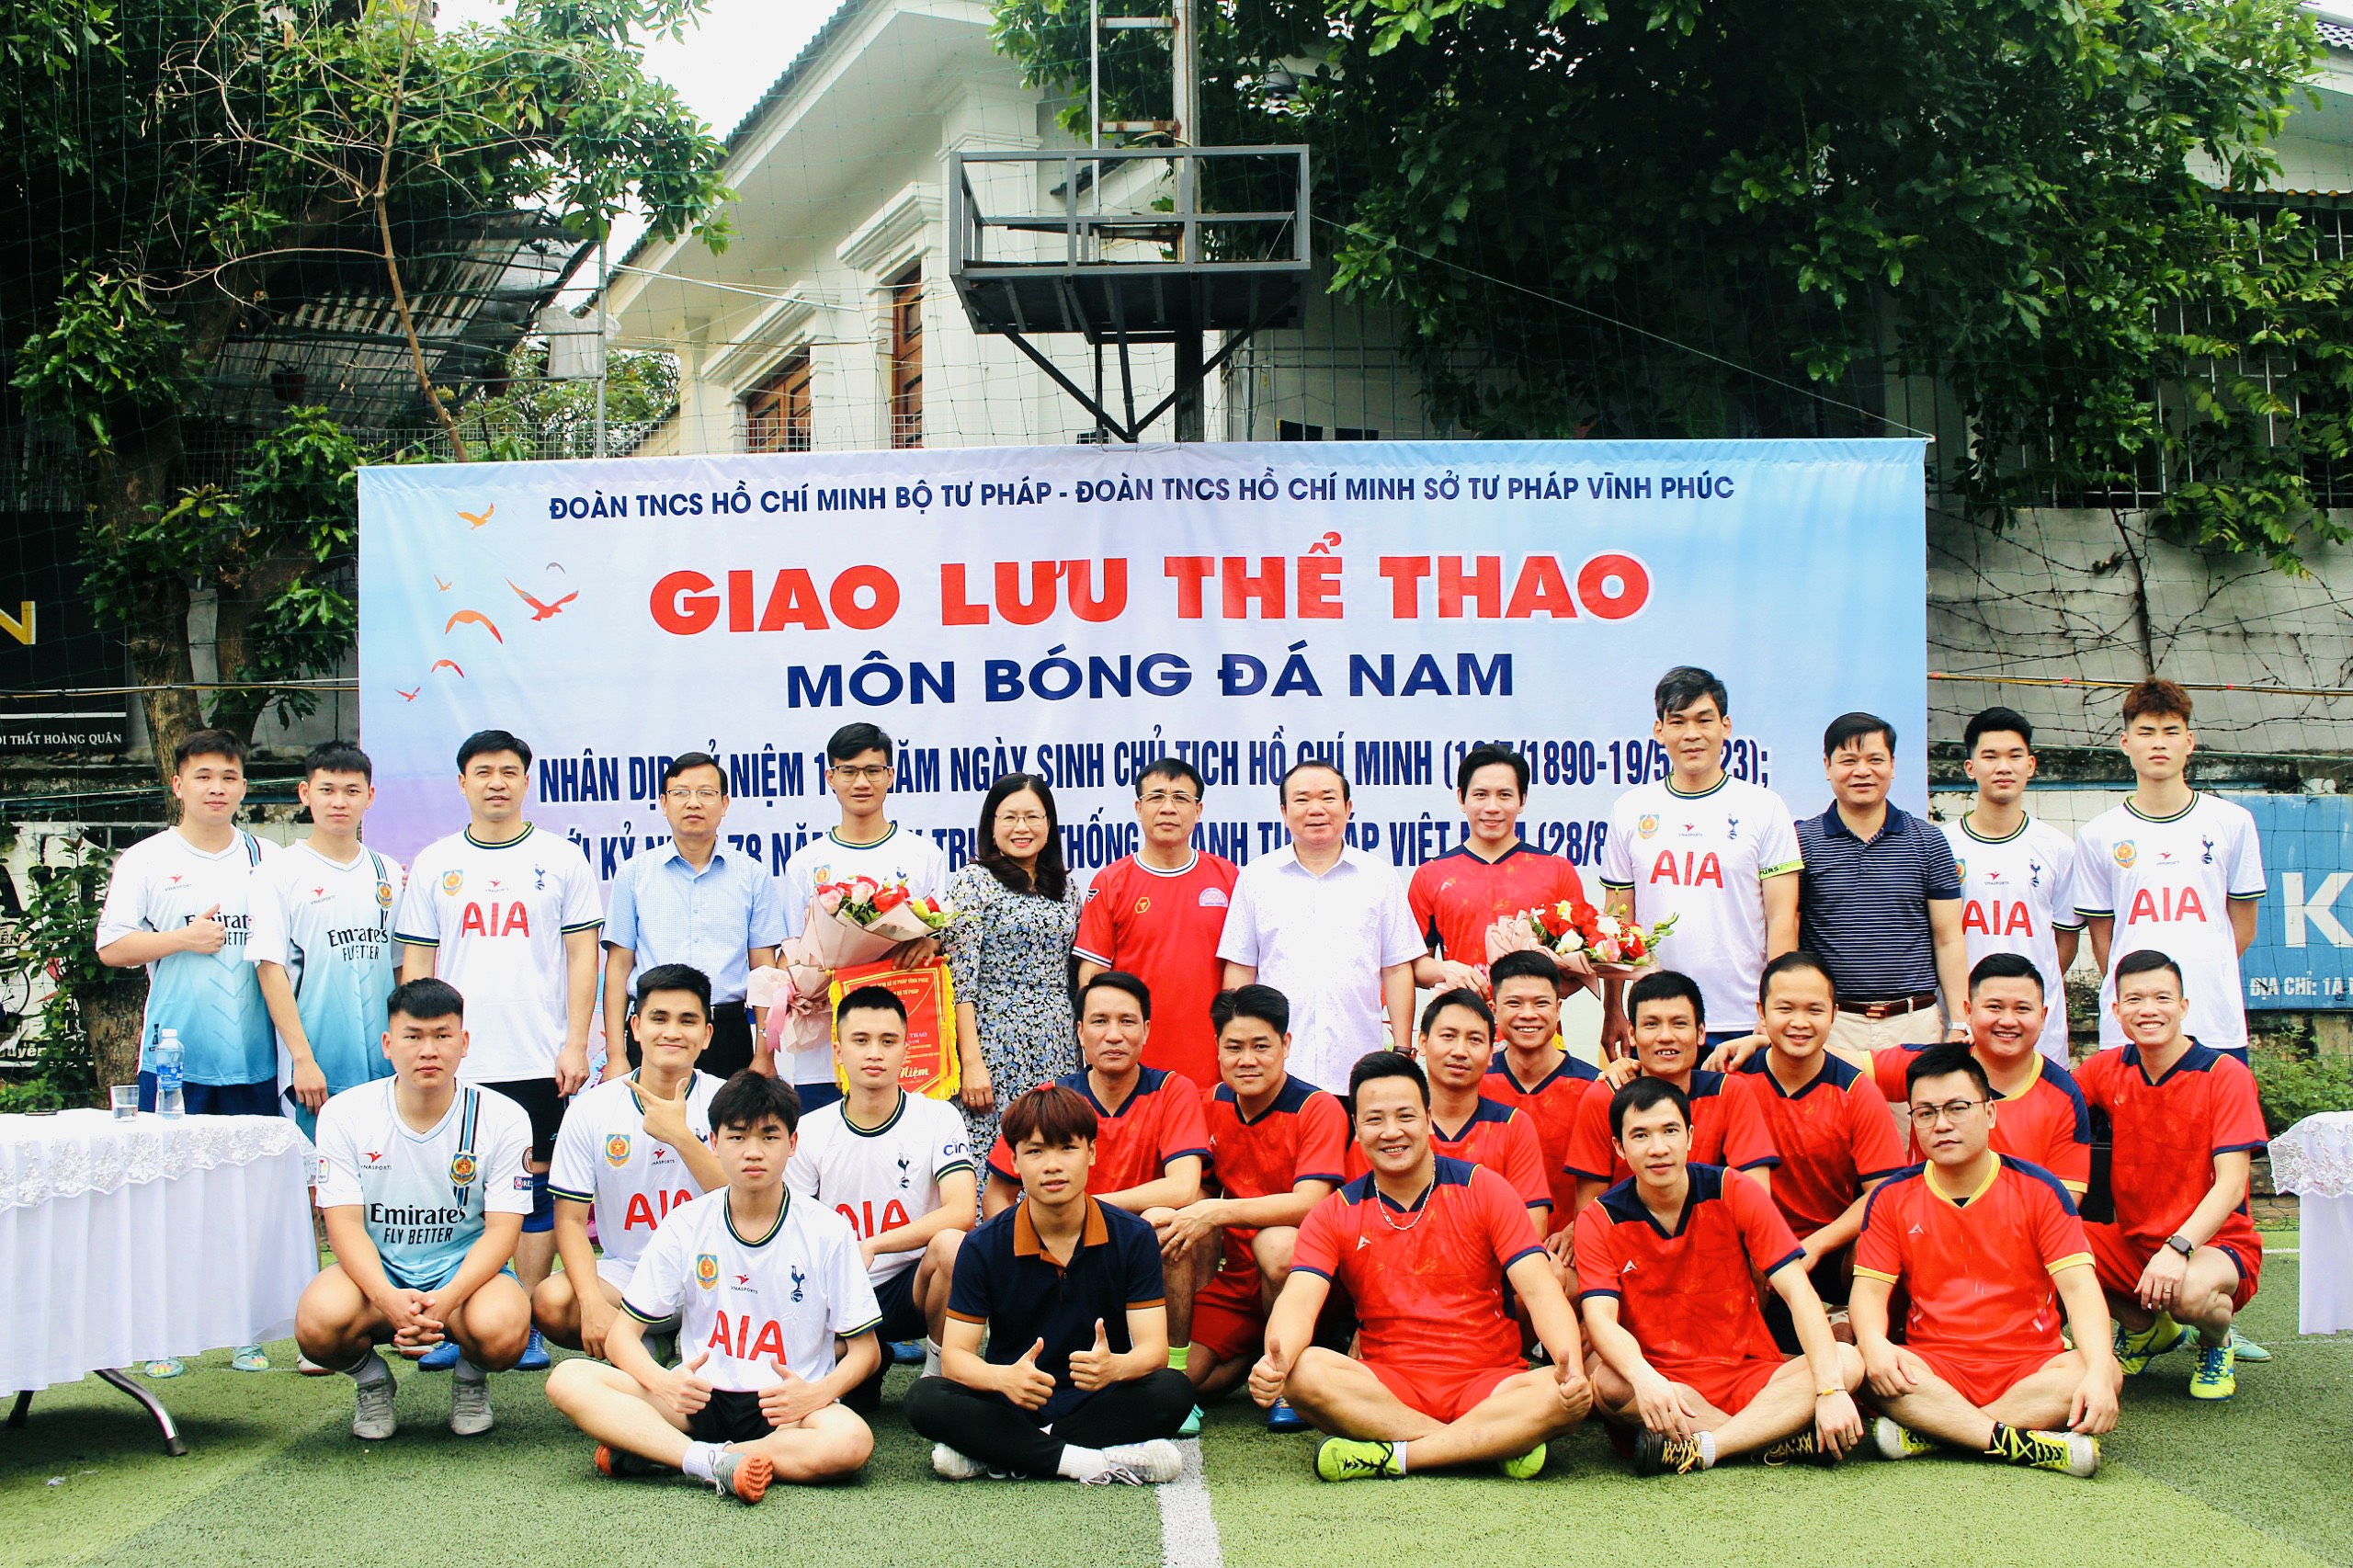 Giao lưu bóng đá chào mừng kỷ niệm 133 năm ngày sinh Chủ tịch Hồ Chí Minh